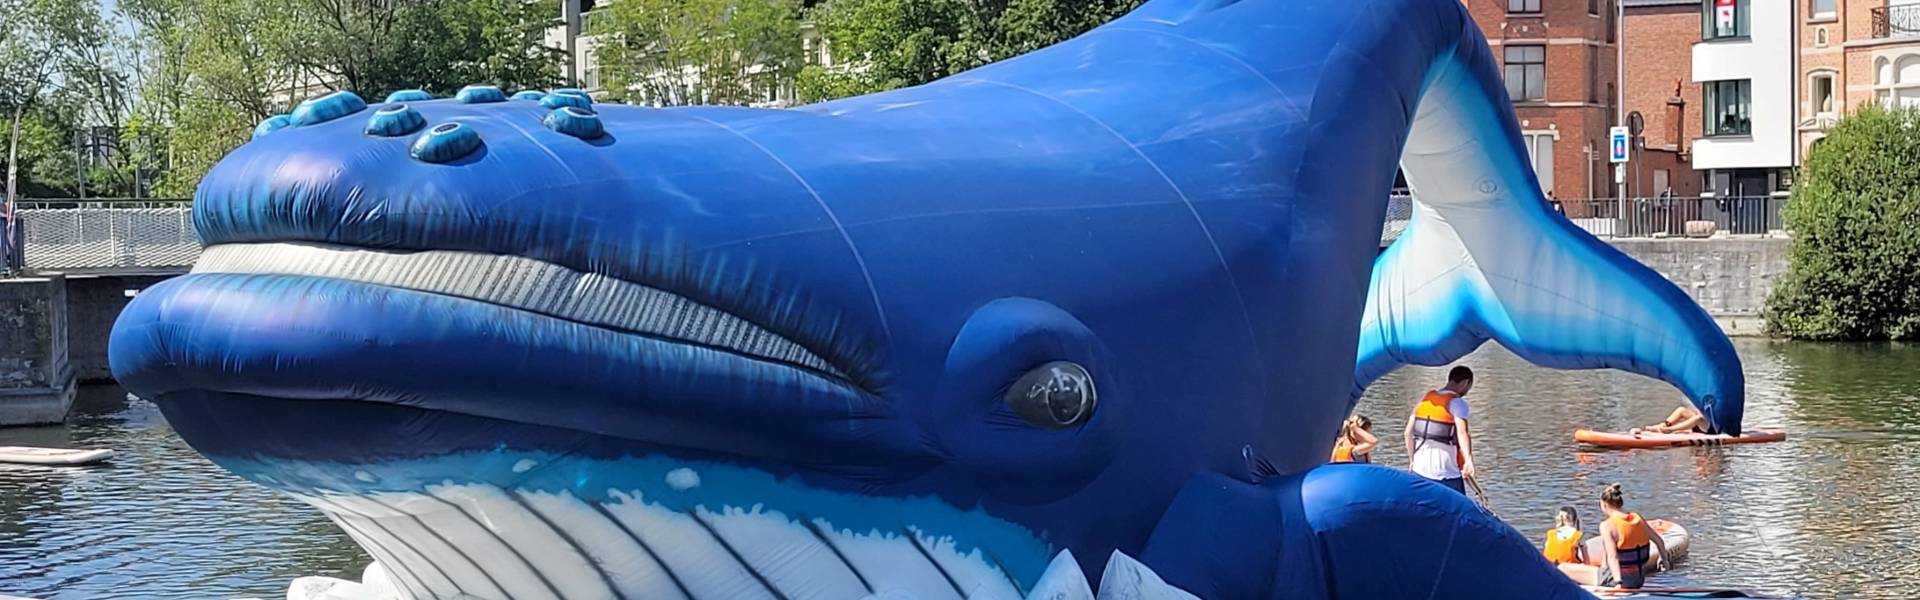 Gonflables géants comme matériel de promotion | X-Treme Creations baleine gonflable, orque gonflable, beluga gonflable, flottant, Termonde, Escaux, Dendre, légende, médiévale, 't saske X-Treme Creations